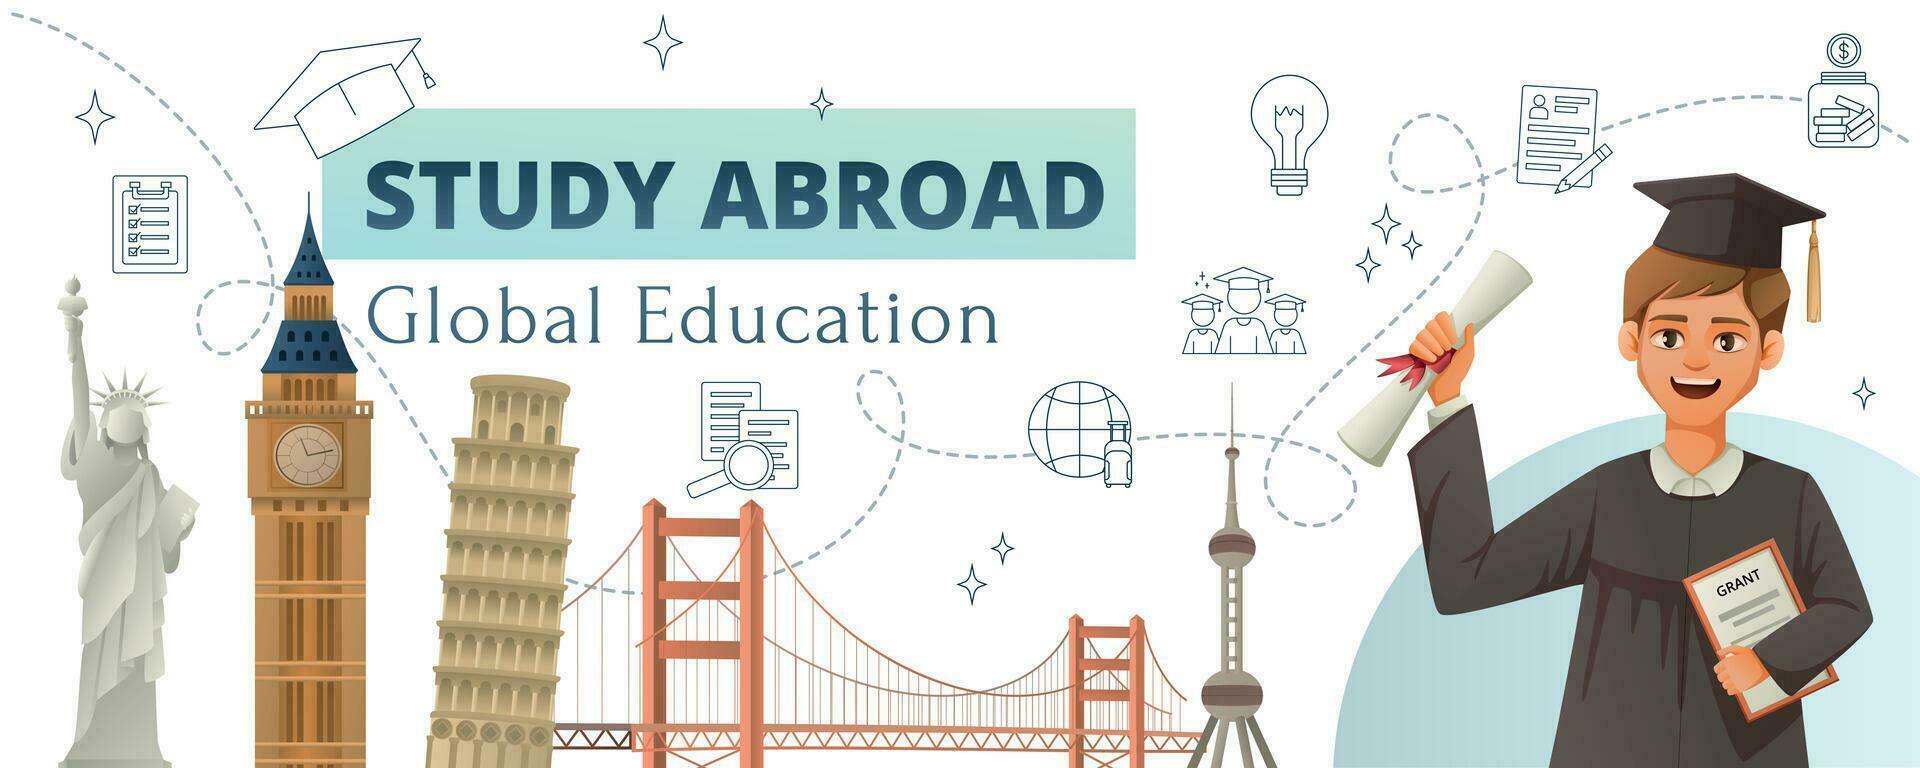 Studie im Ausland Bildung Hintergrund vektor